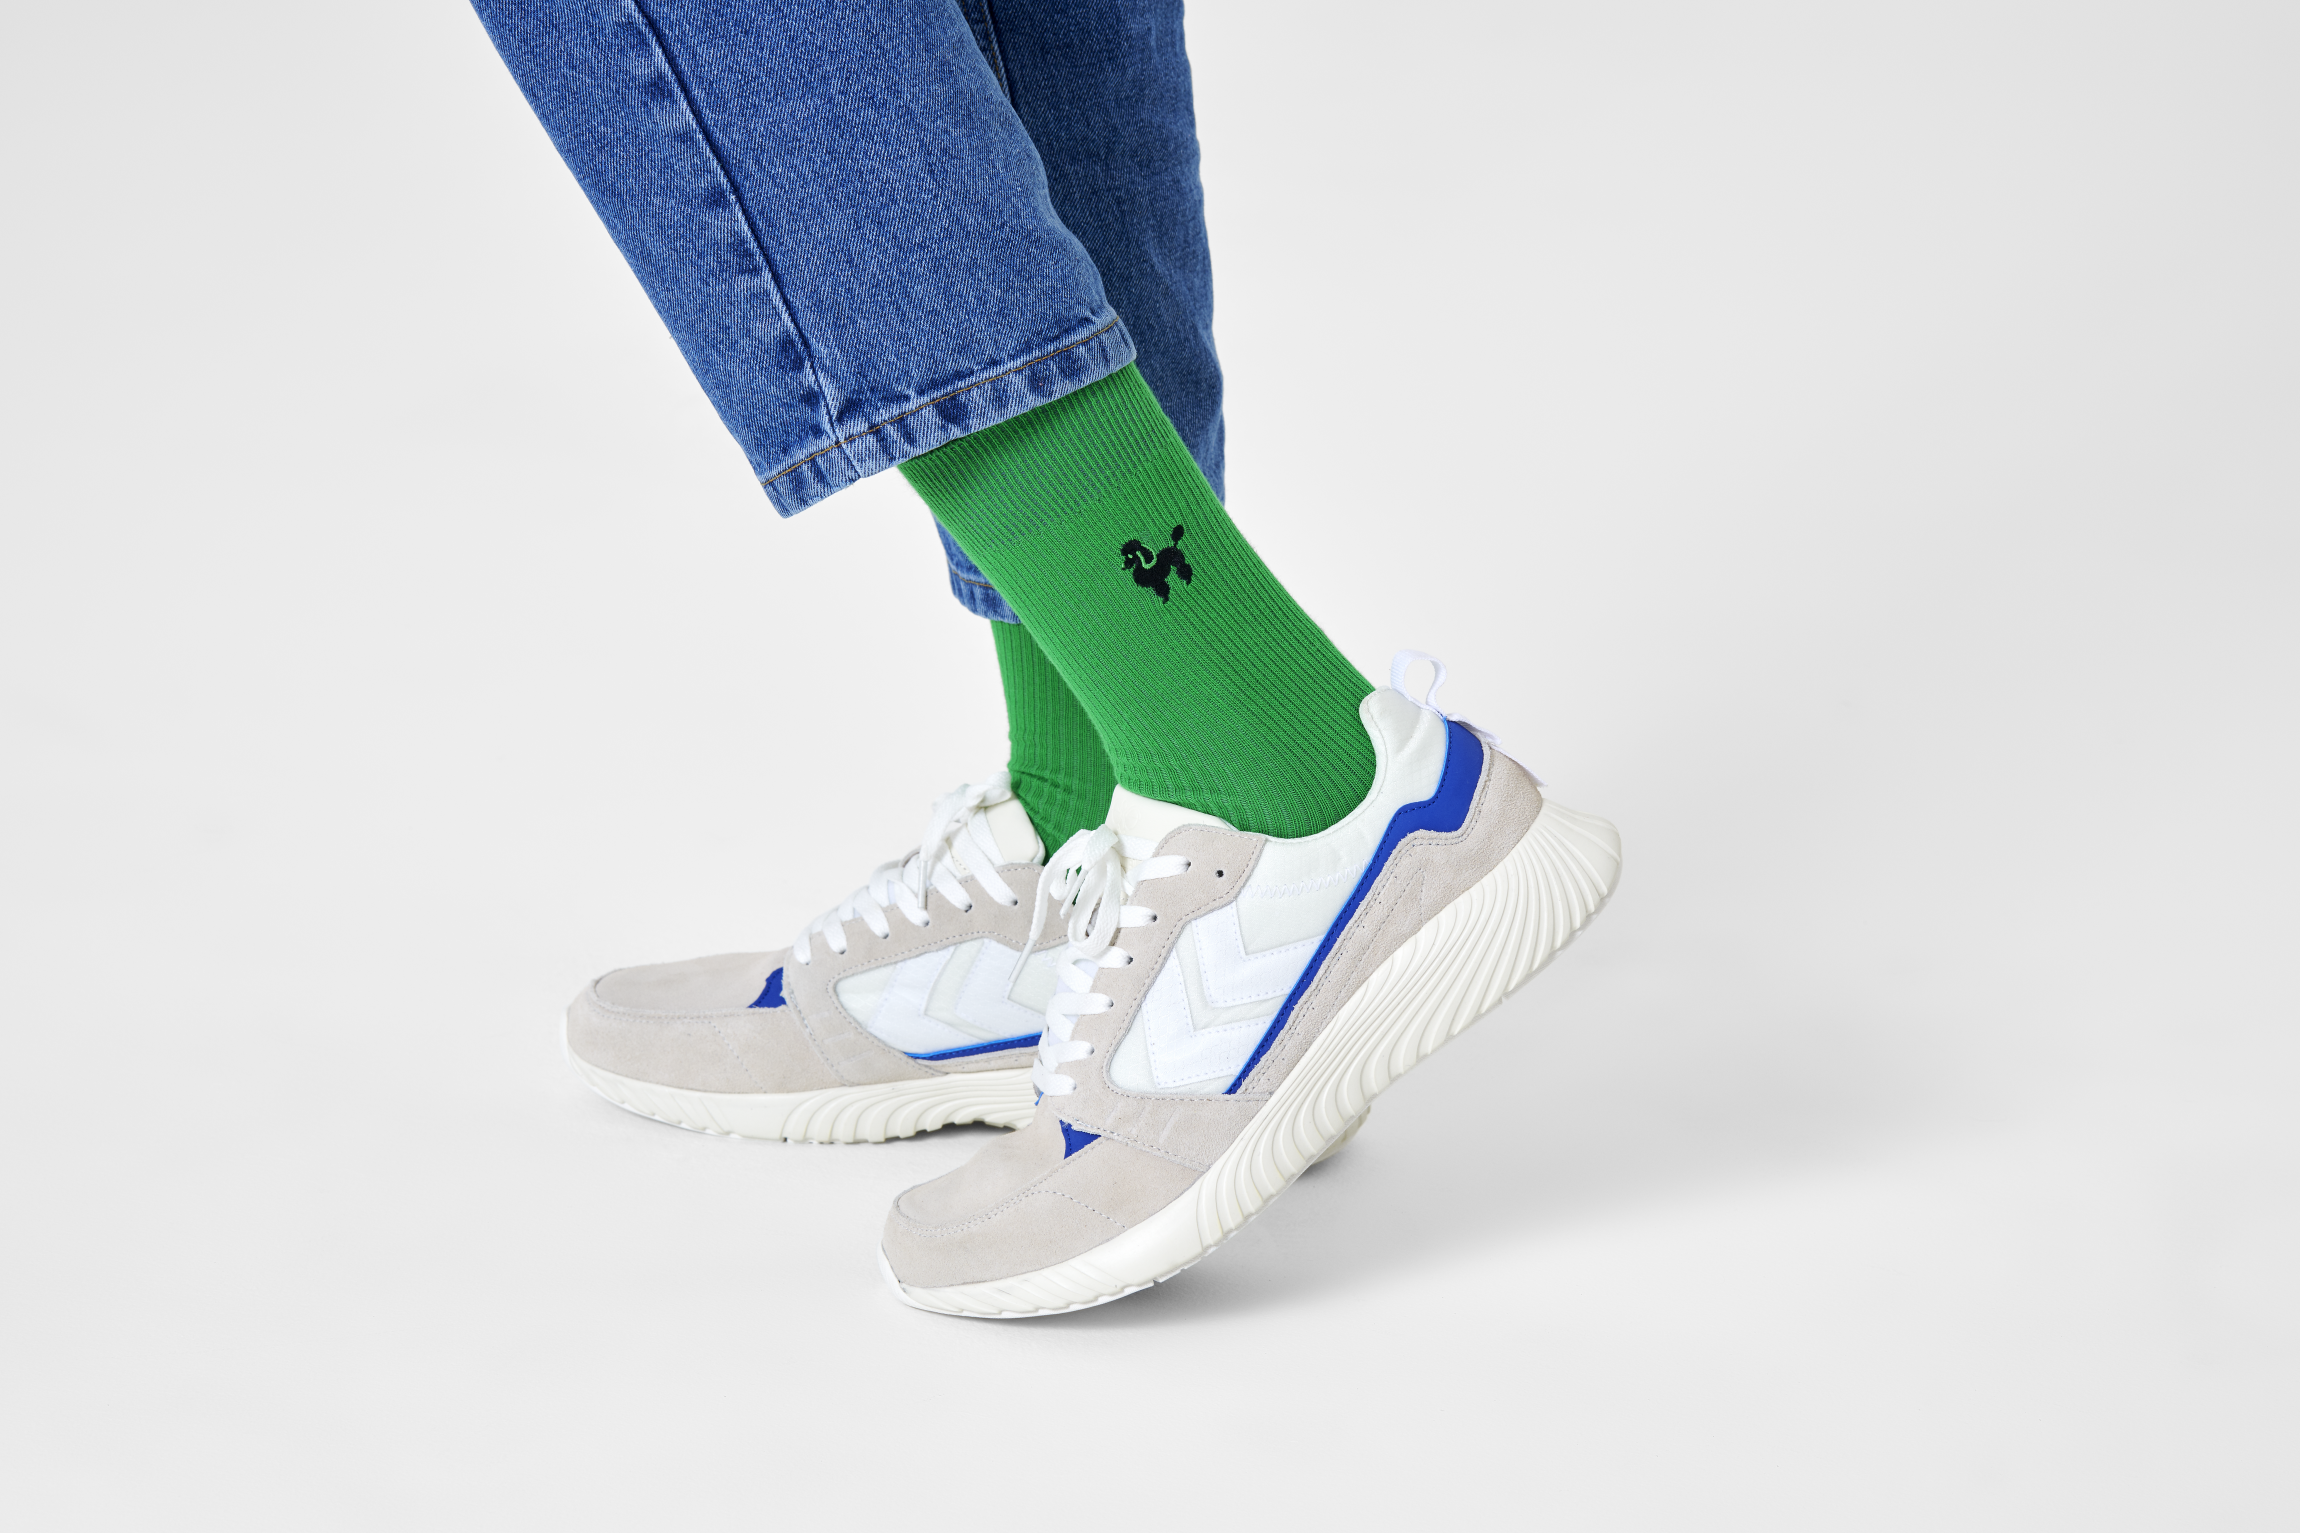 Zelené vroubkované ponožky Happy Socks s vyšitým pudlem, vzor Poodle